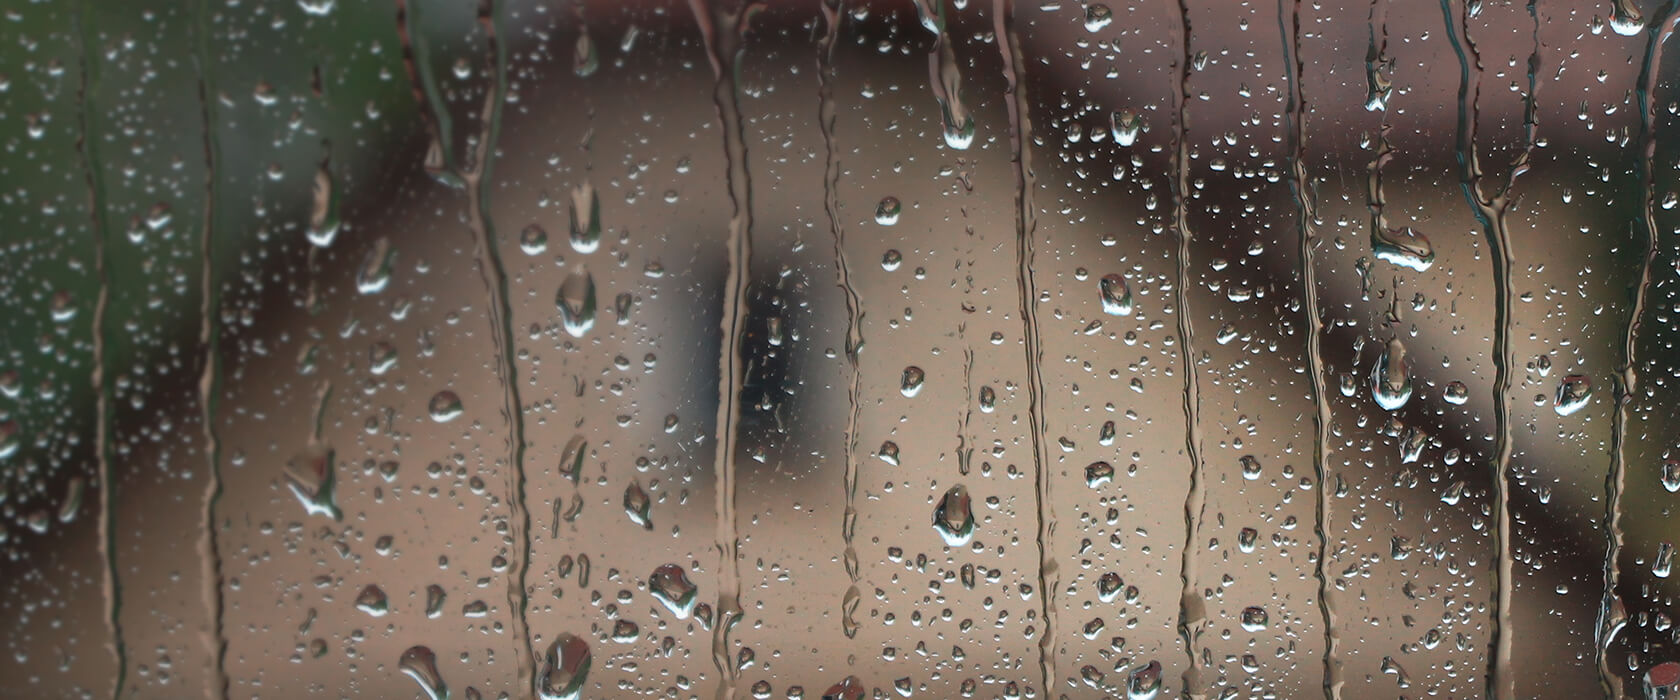 Symbolbild starker Regen an der Fensterscheibe